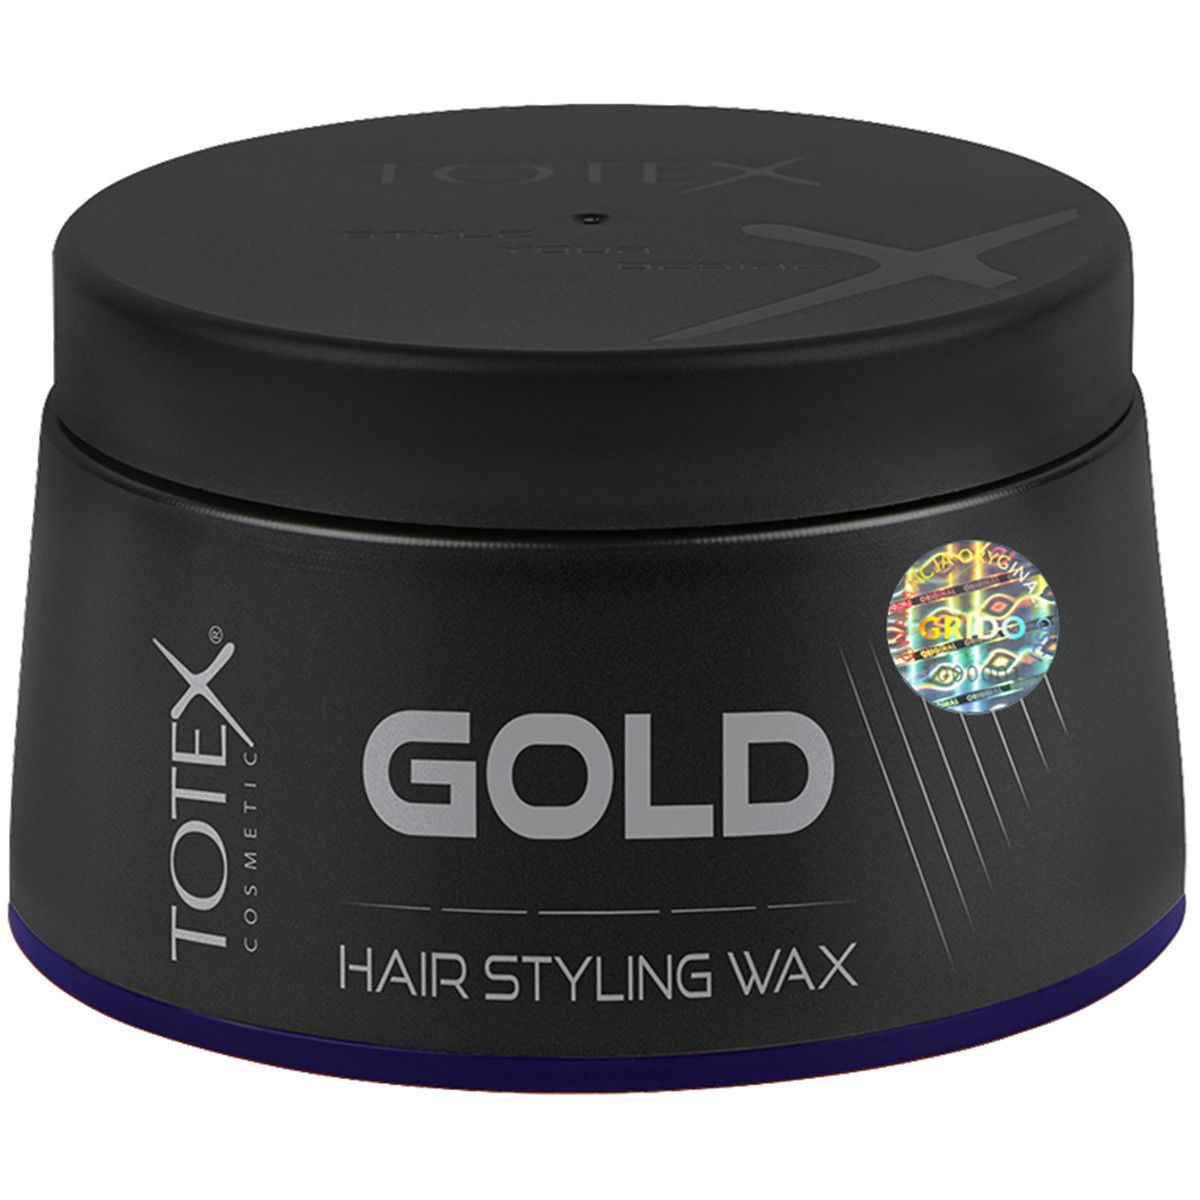 Totex Gold Hair Styling Wax - mocna pomada do stylizacji włosów, 150ml